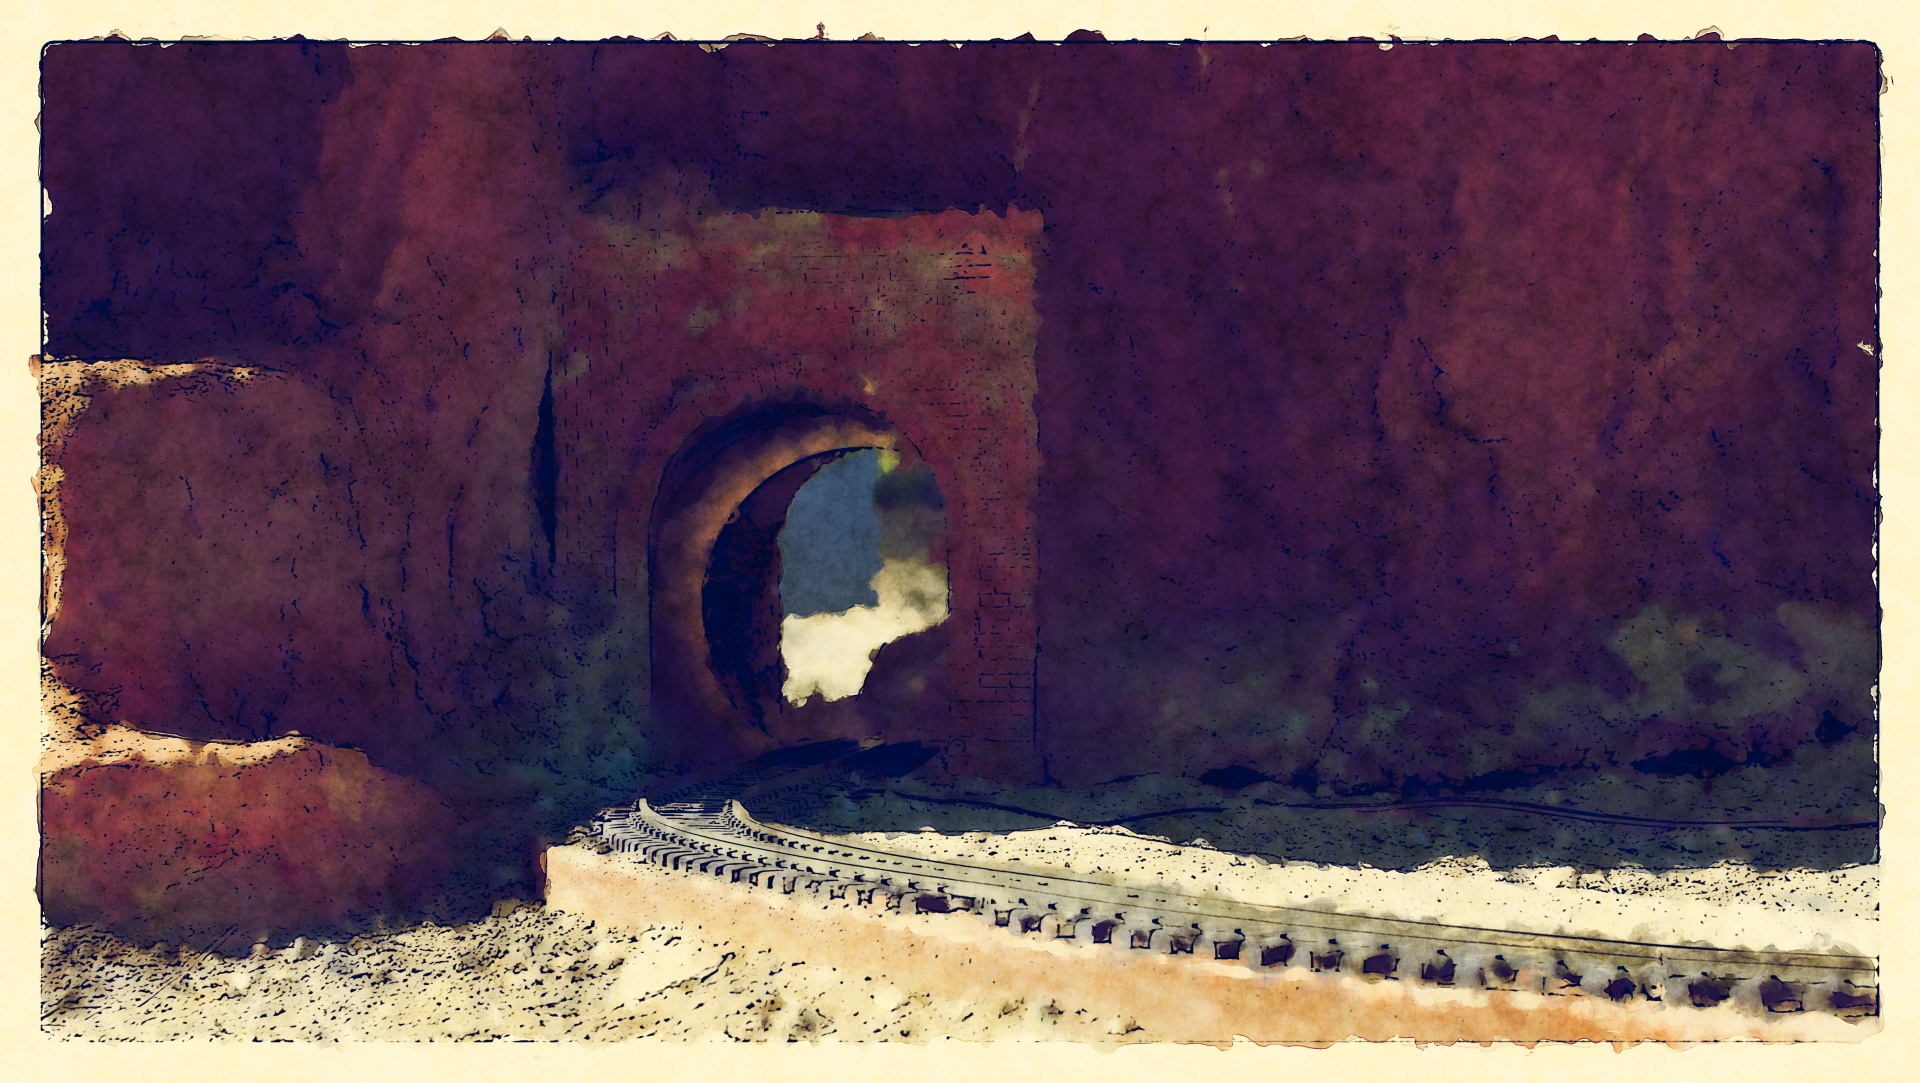 železniční tratě vedoucí do tunelu